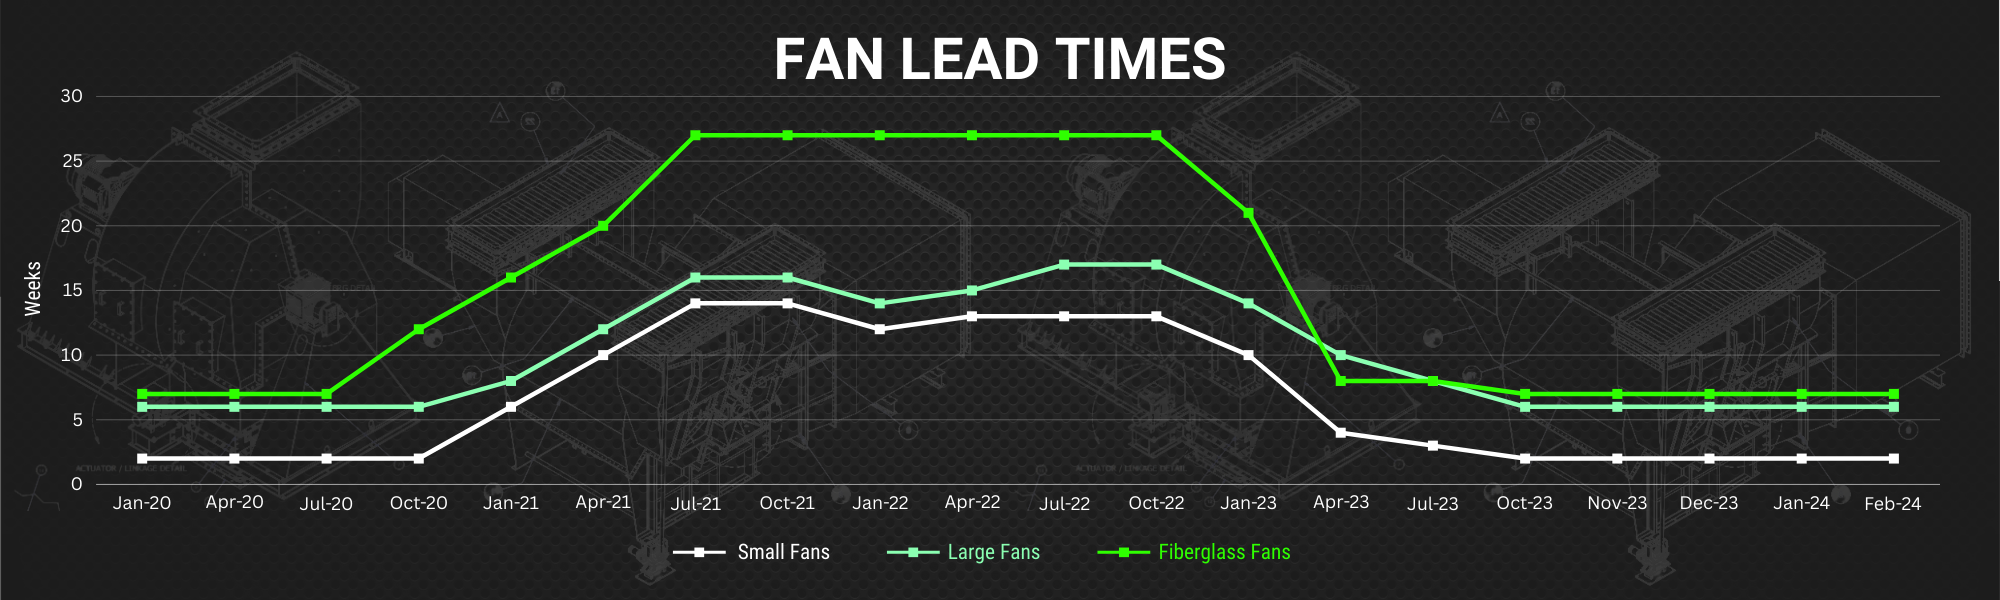 Fan Lead Times Chart